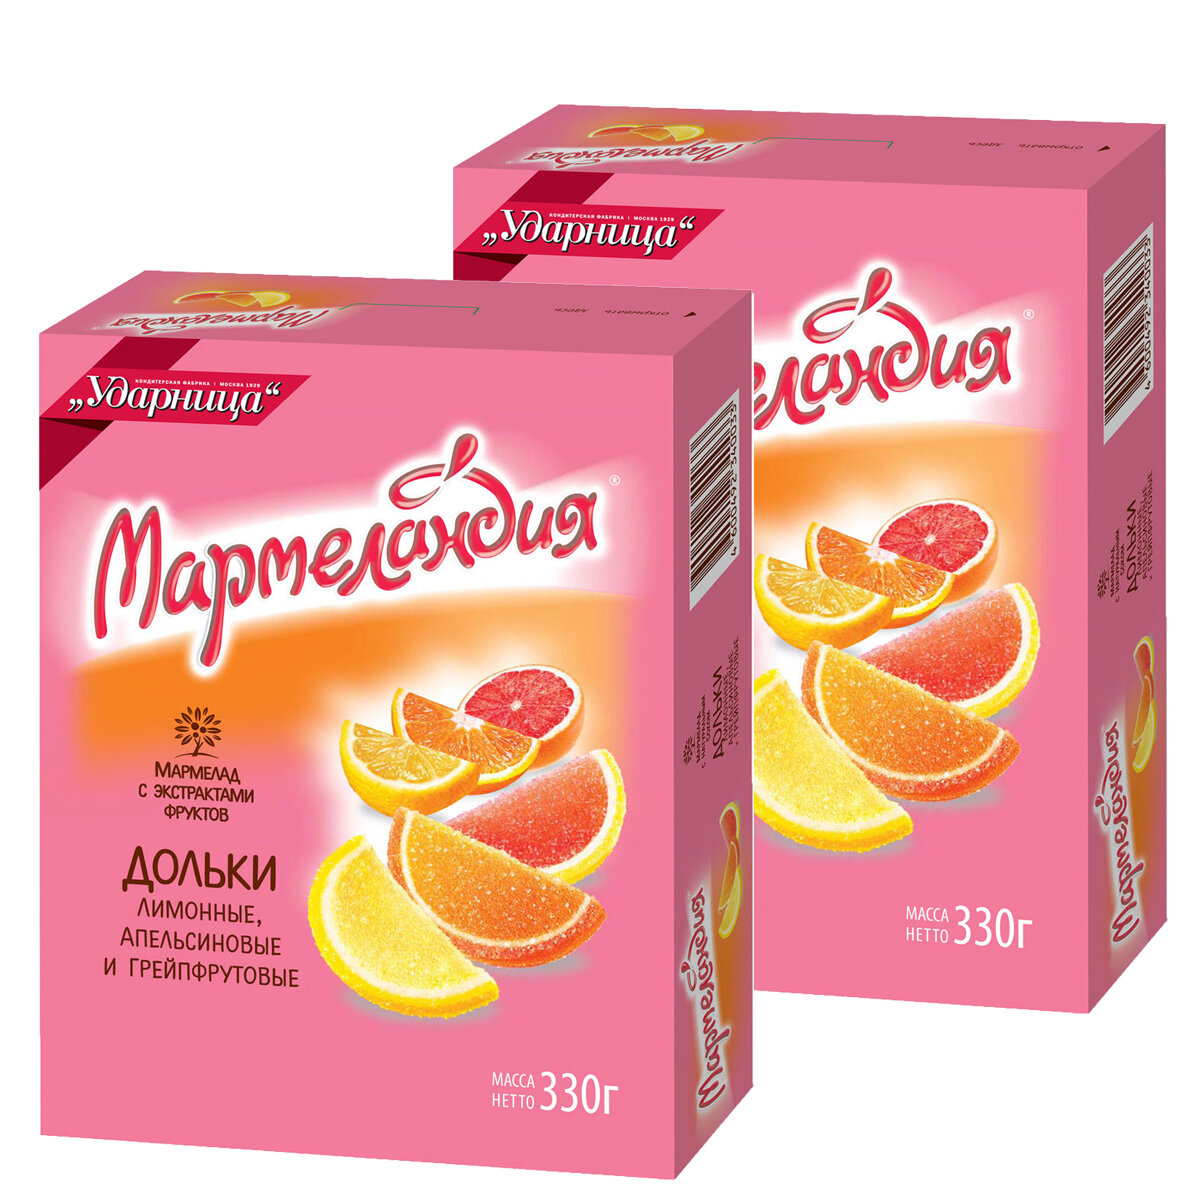 Мармелад "Мармеландия" Лимонные, Апельсиновые, Грейпфрутовые и дольки, 2 упаковки по 330 грамм.